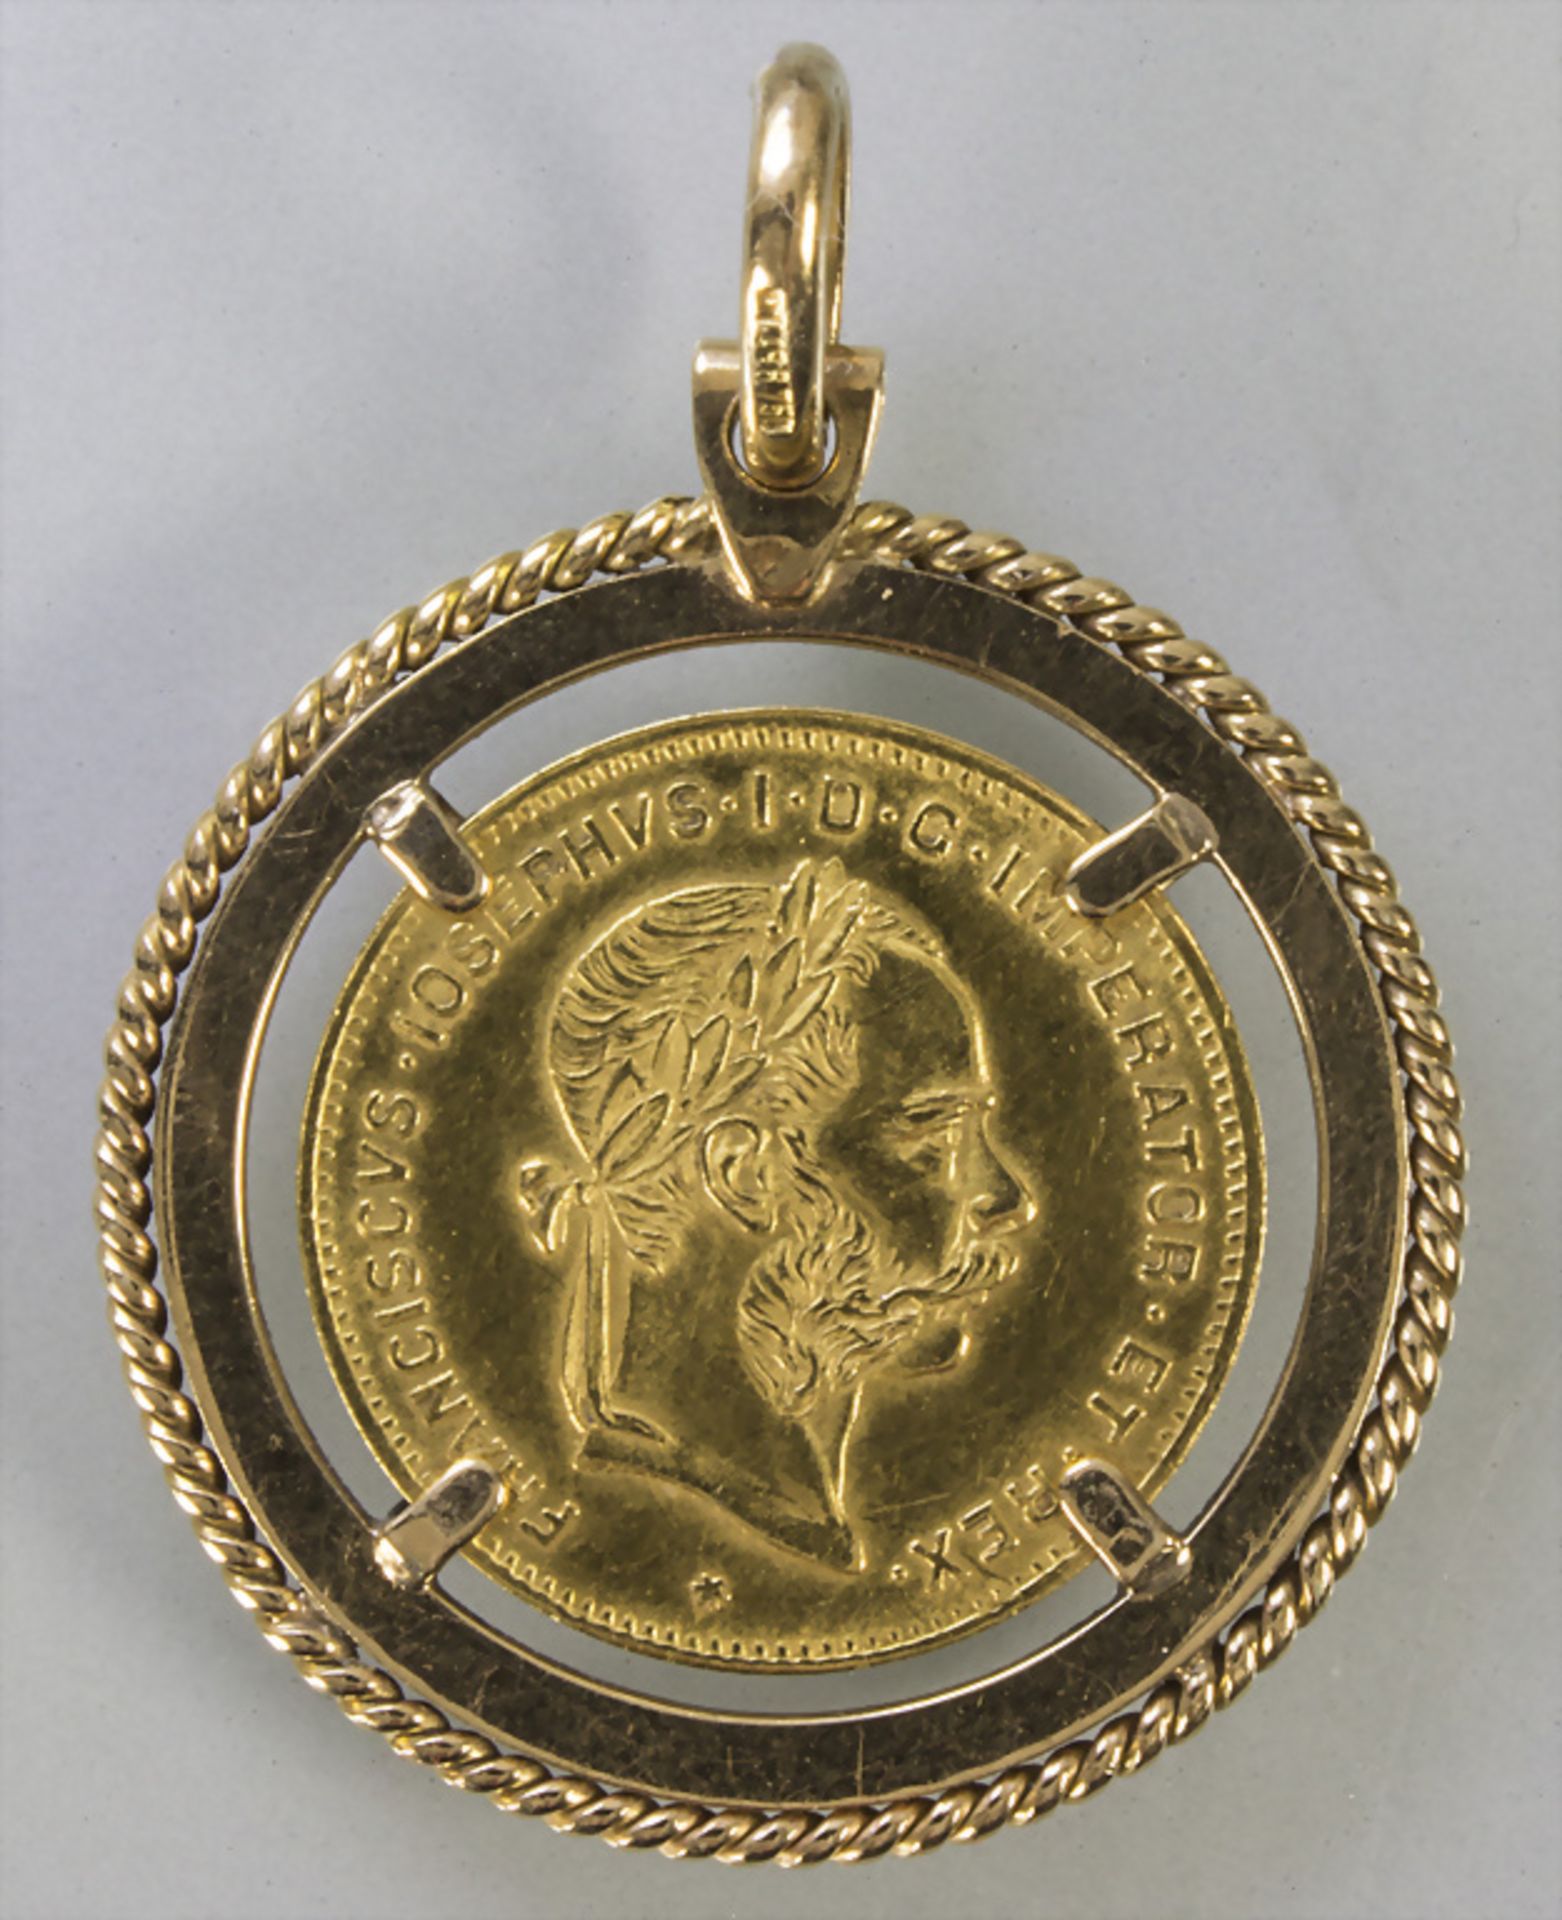 Goldmünze, Österreich, 4 Florin, 1892 / A gold coin, Austria, 4 florins, 1892